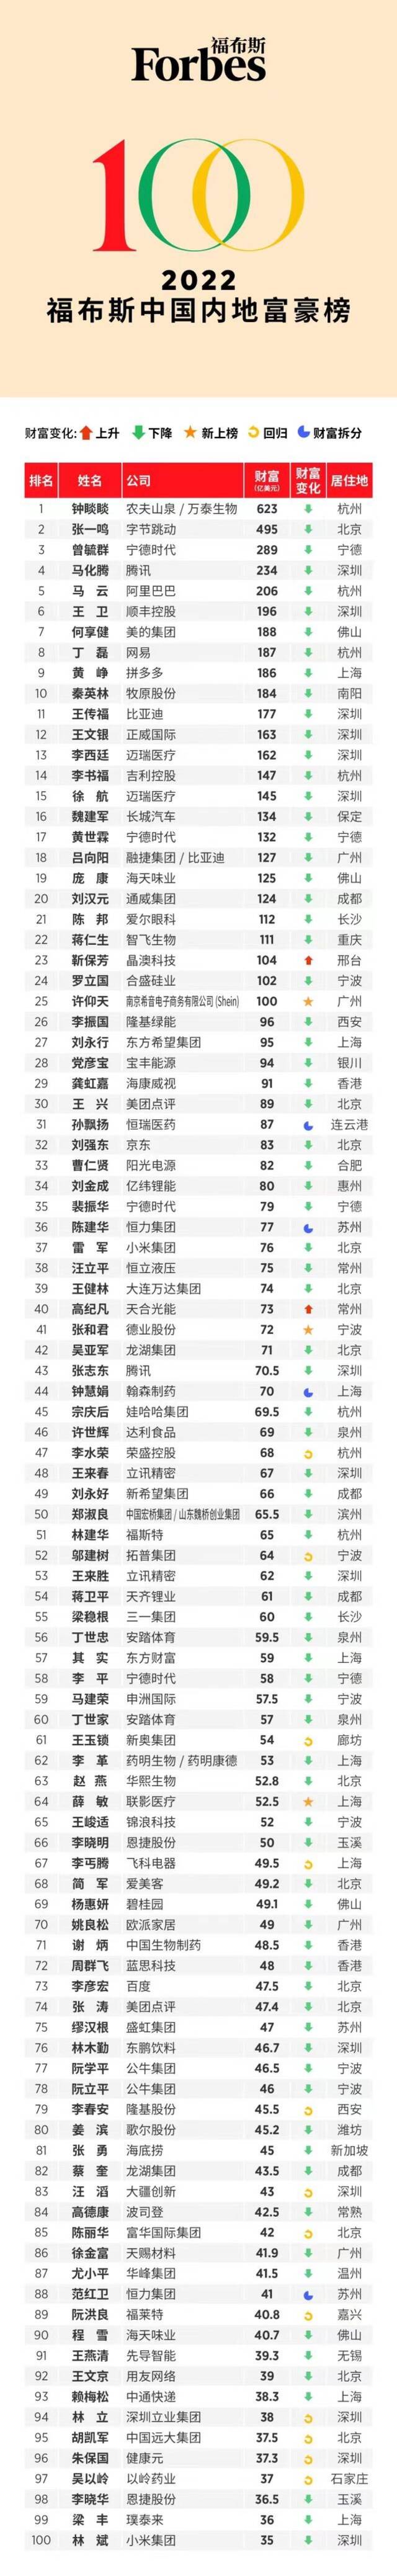 王传福在福布斯中国内地富豪榜排名上升至第11位，何小鹏跌出前100